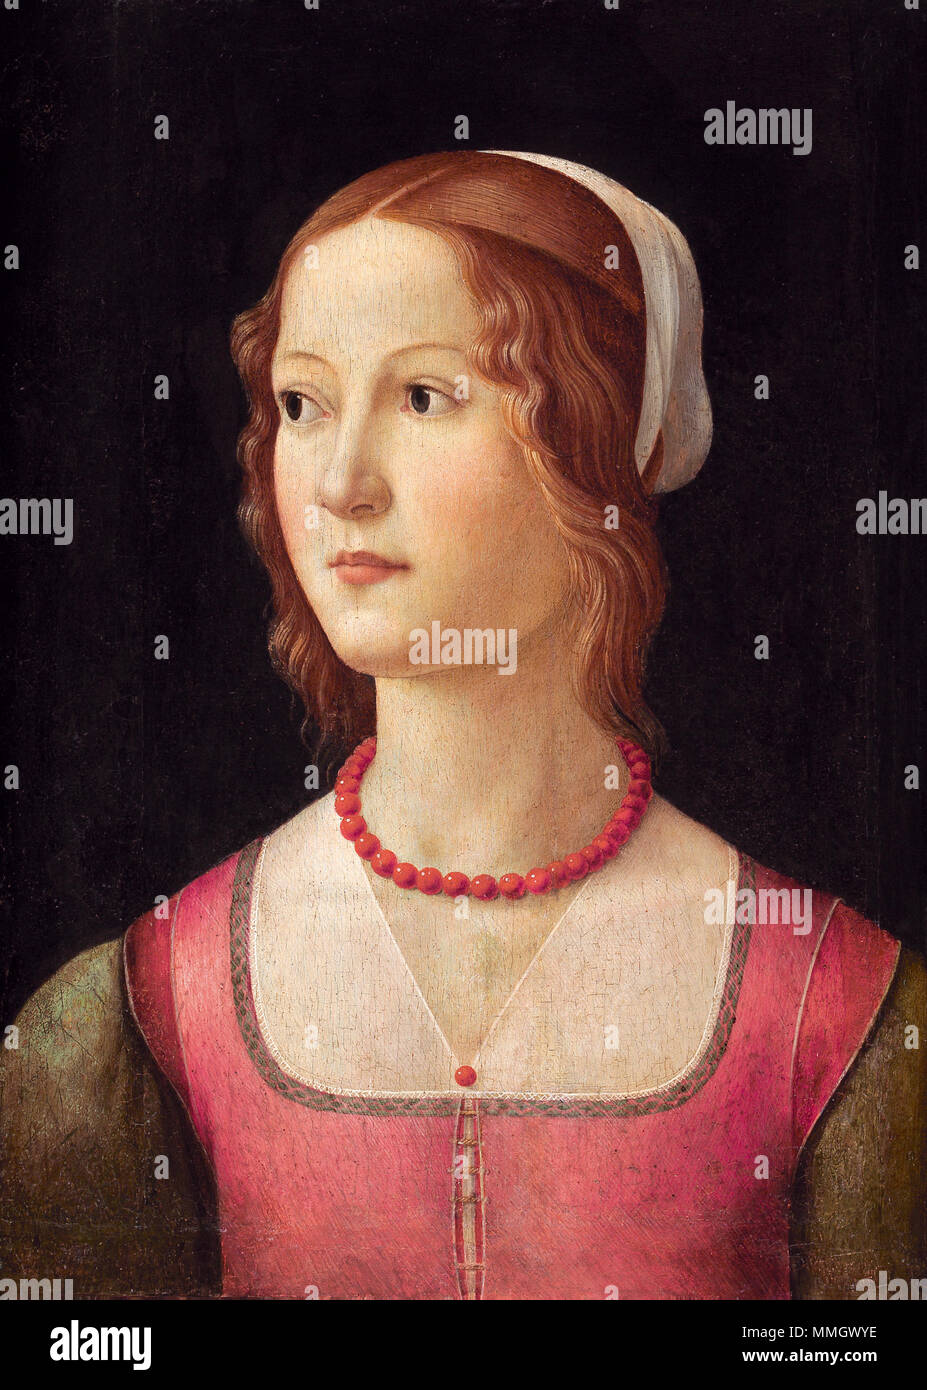 English: Portrait of a Young Woman . second half of 15th century. Domenico ghirlandaio, ritratto di giovane donna, lisbona Stock Photo